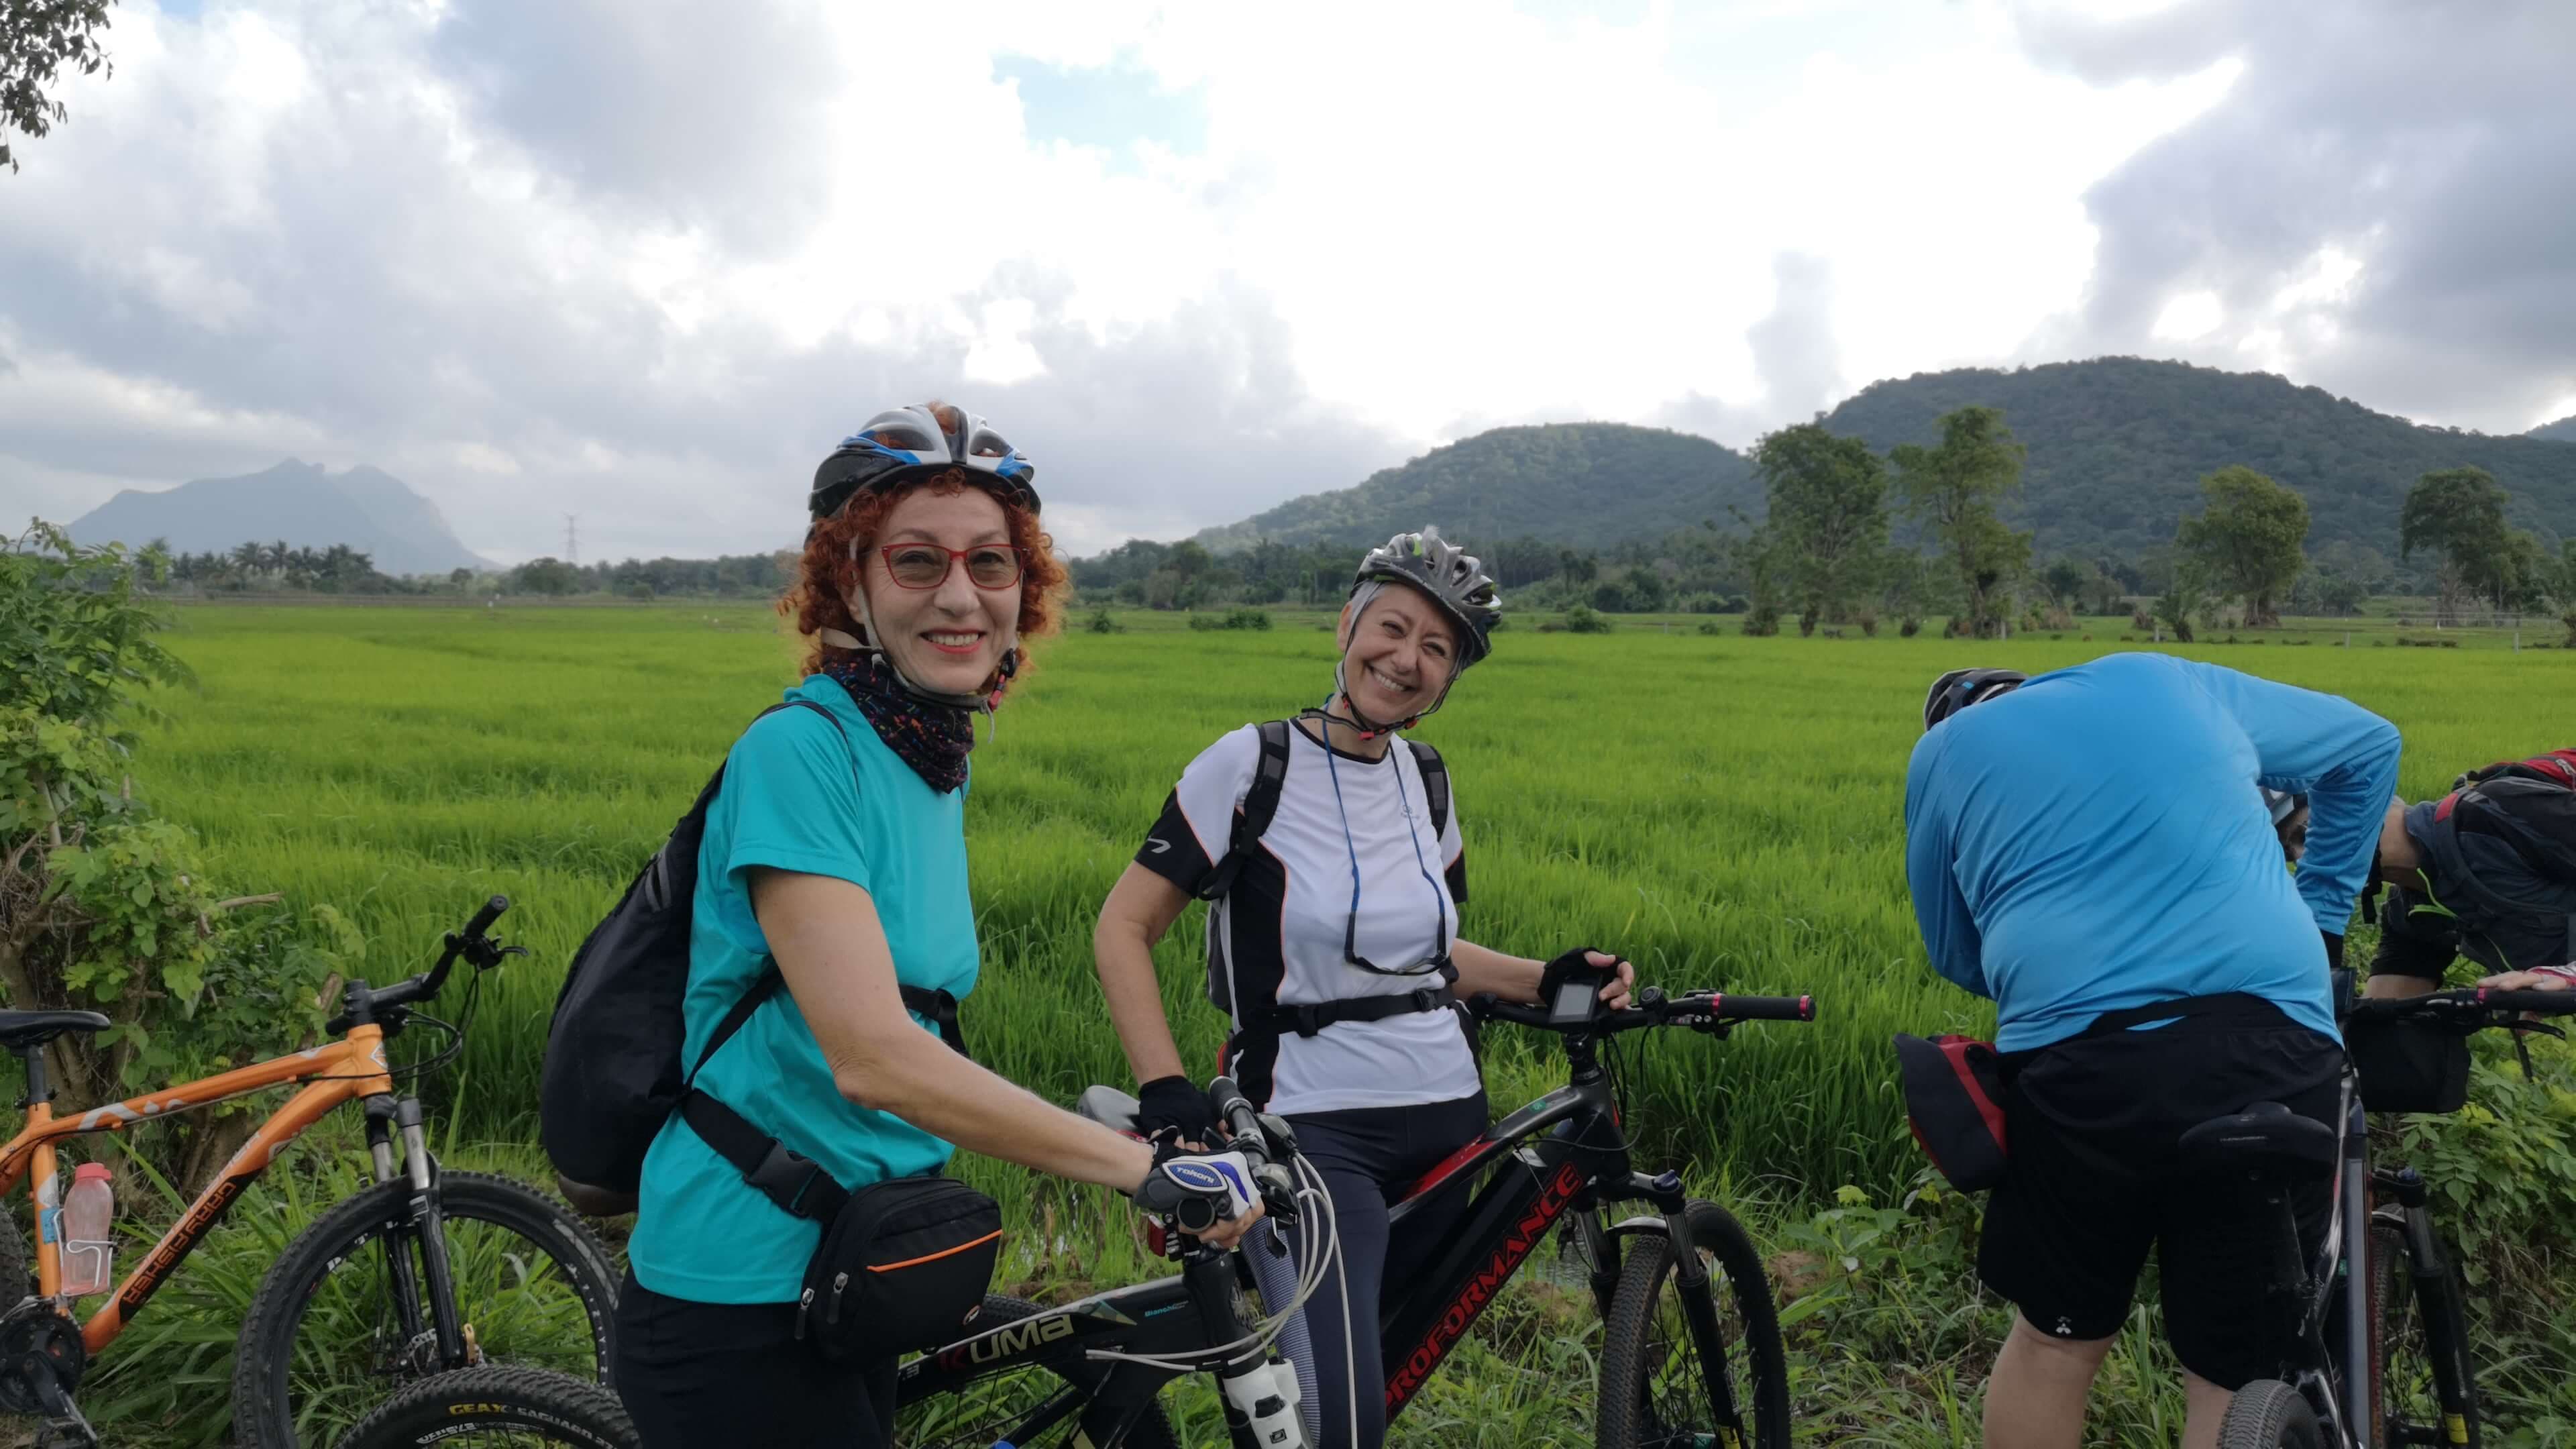 Los ciclistas observan la belleza del campo de arroz de Sri Lanka en Sigiriya